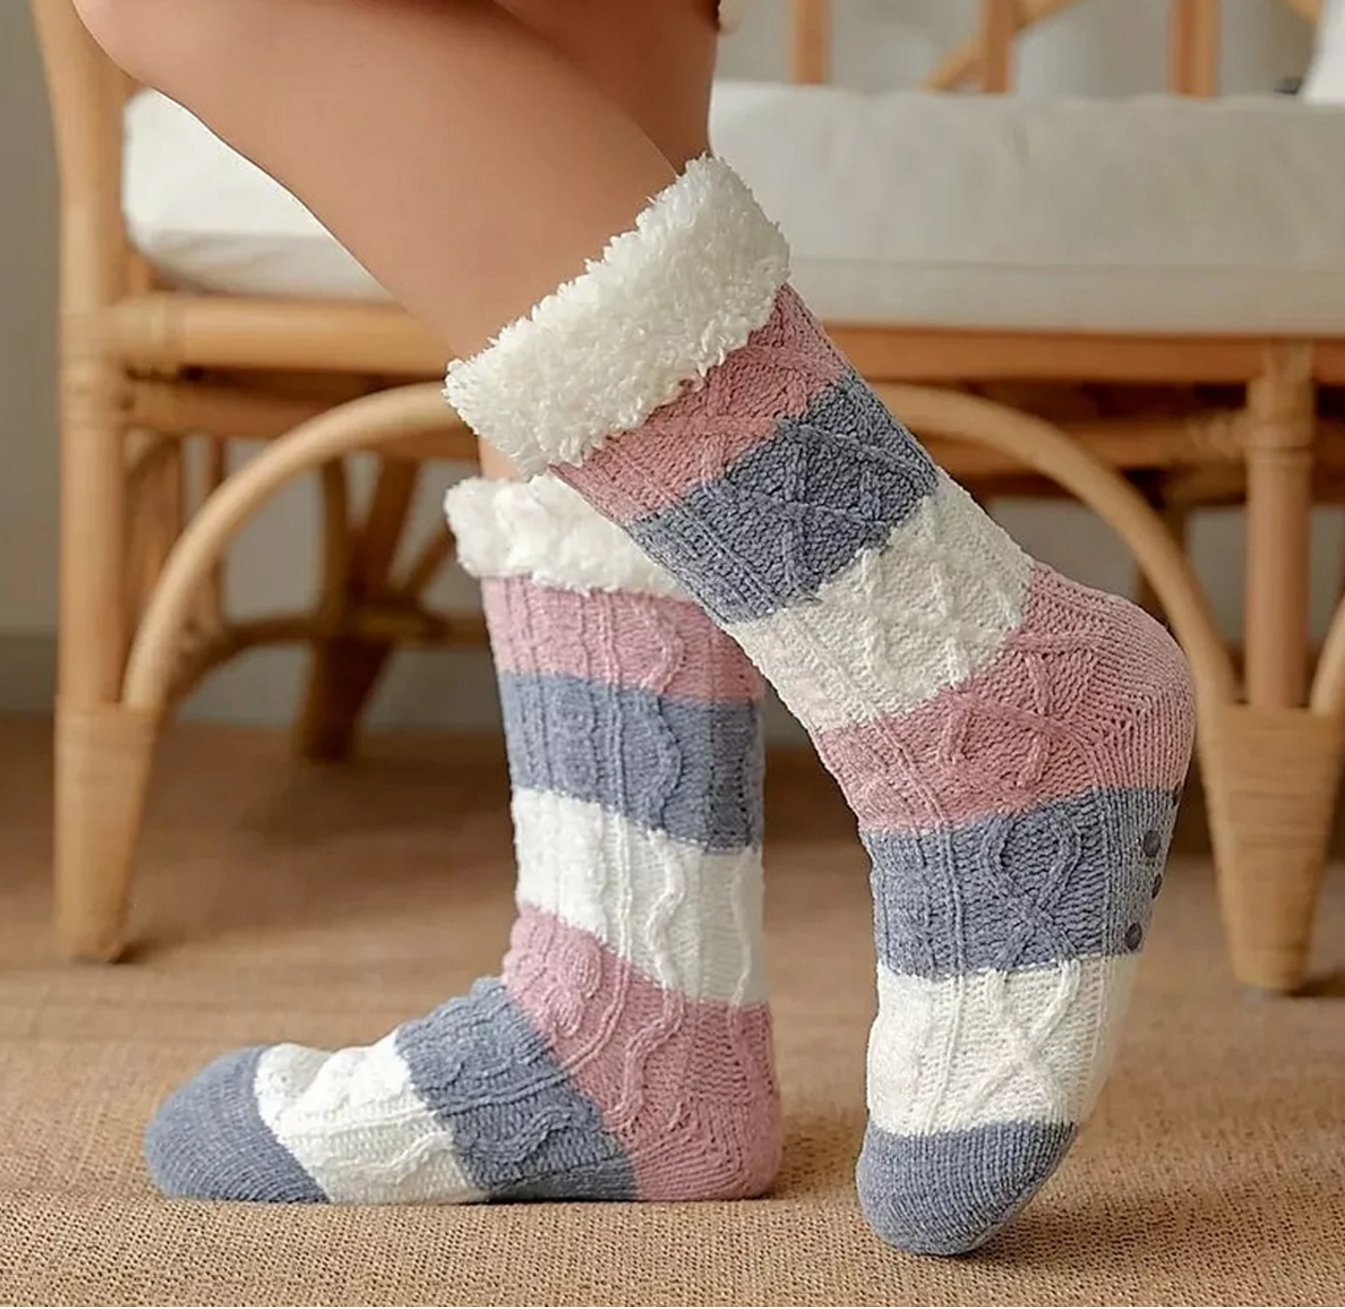 slipper socks